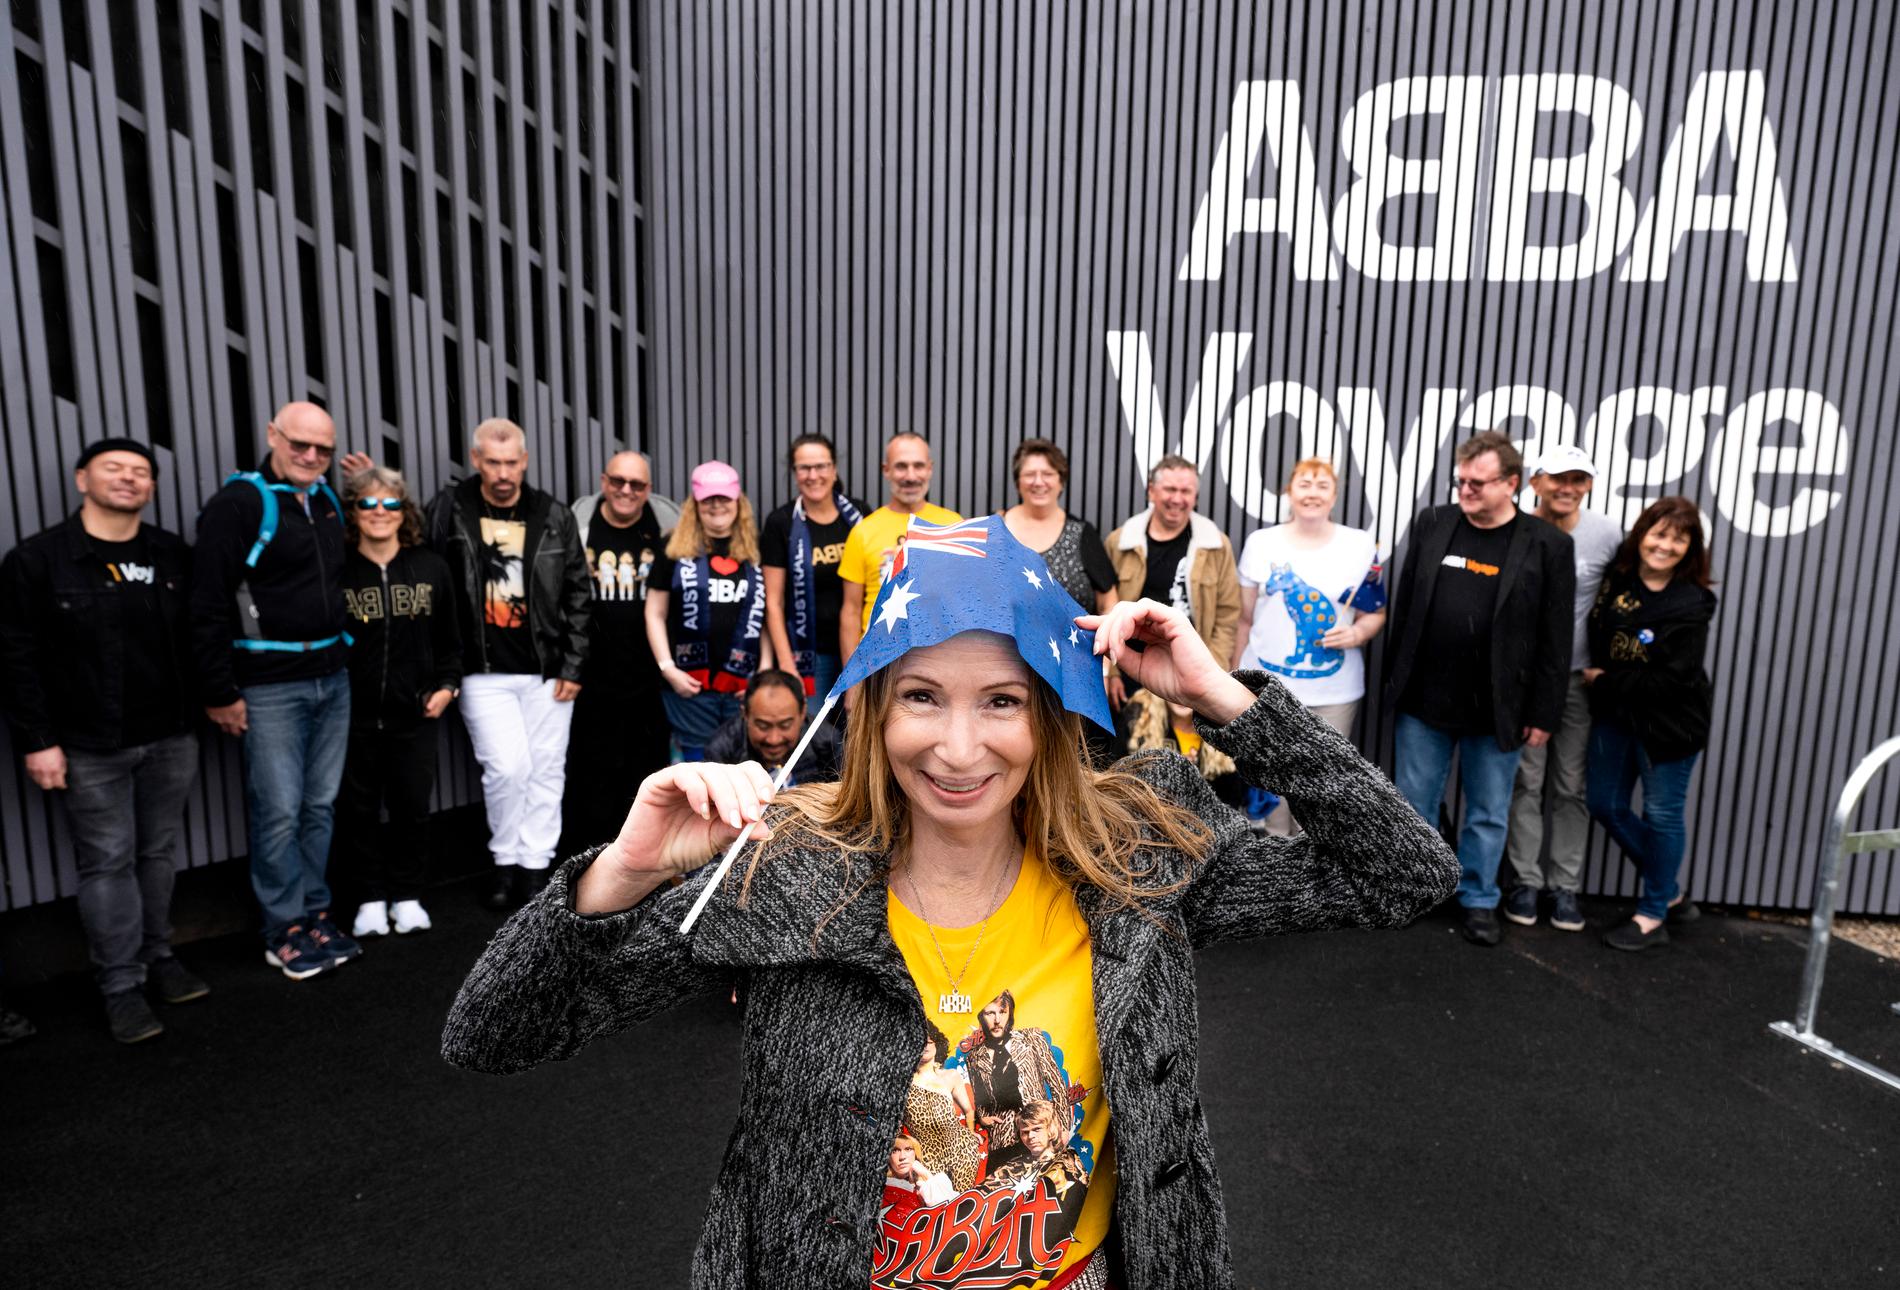 De australiska fansen vittnar om hur mycket Abba betyder för dem. "Vi har ett speciellt förhållande till Abba", säger Cotton.